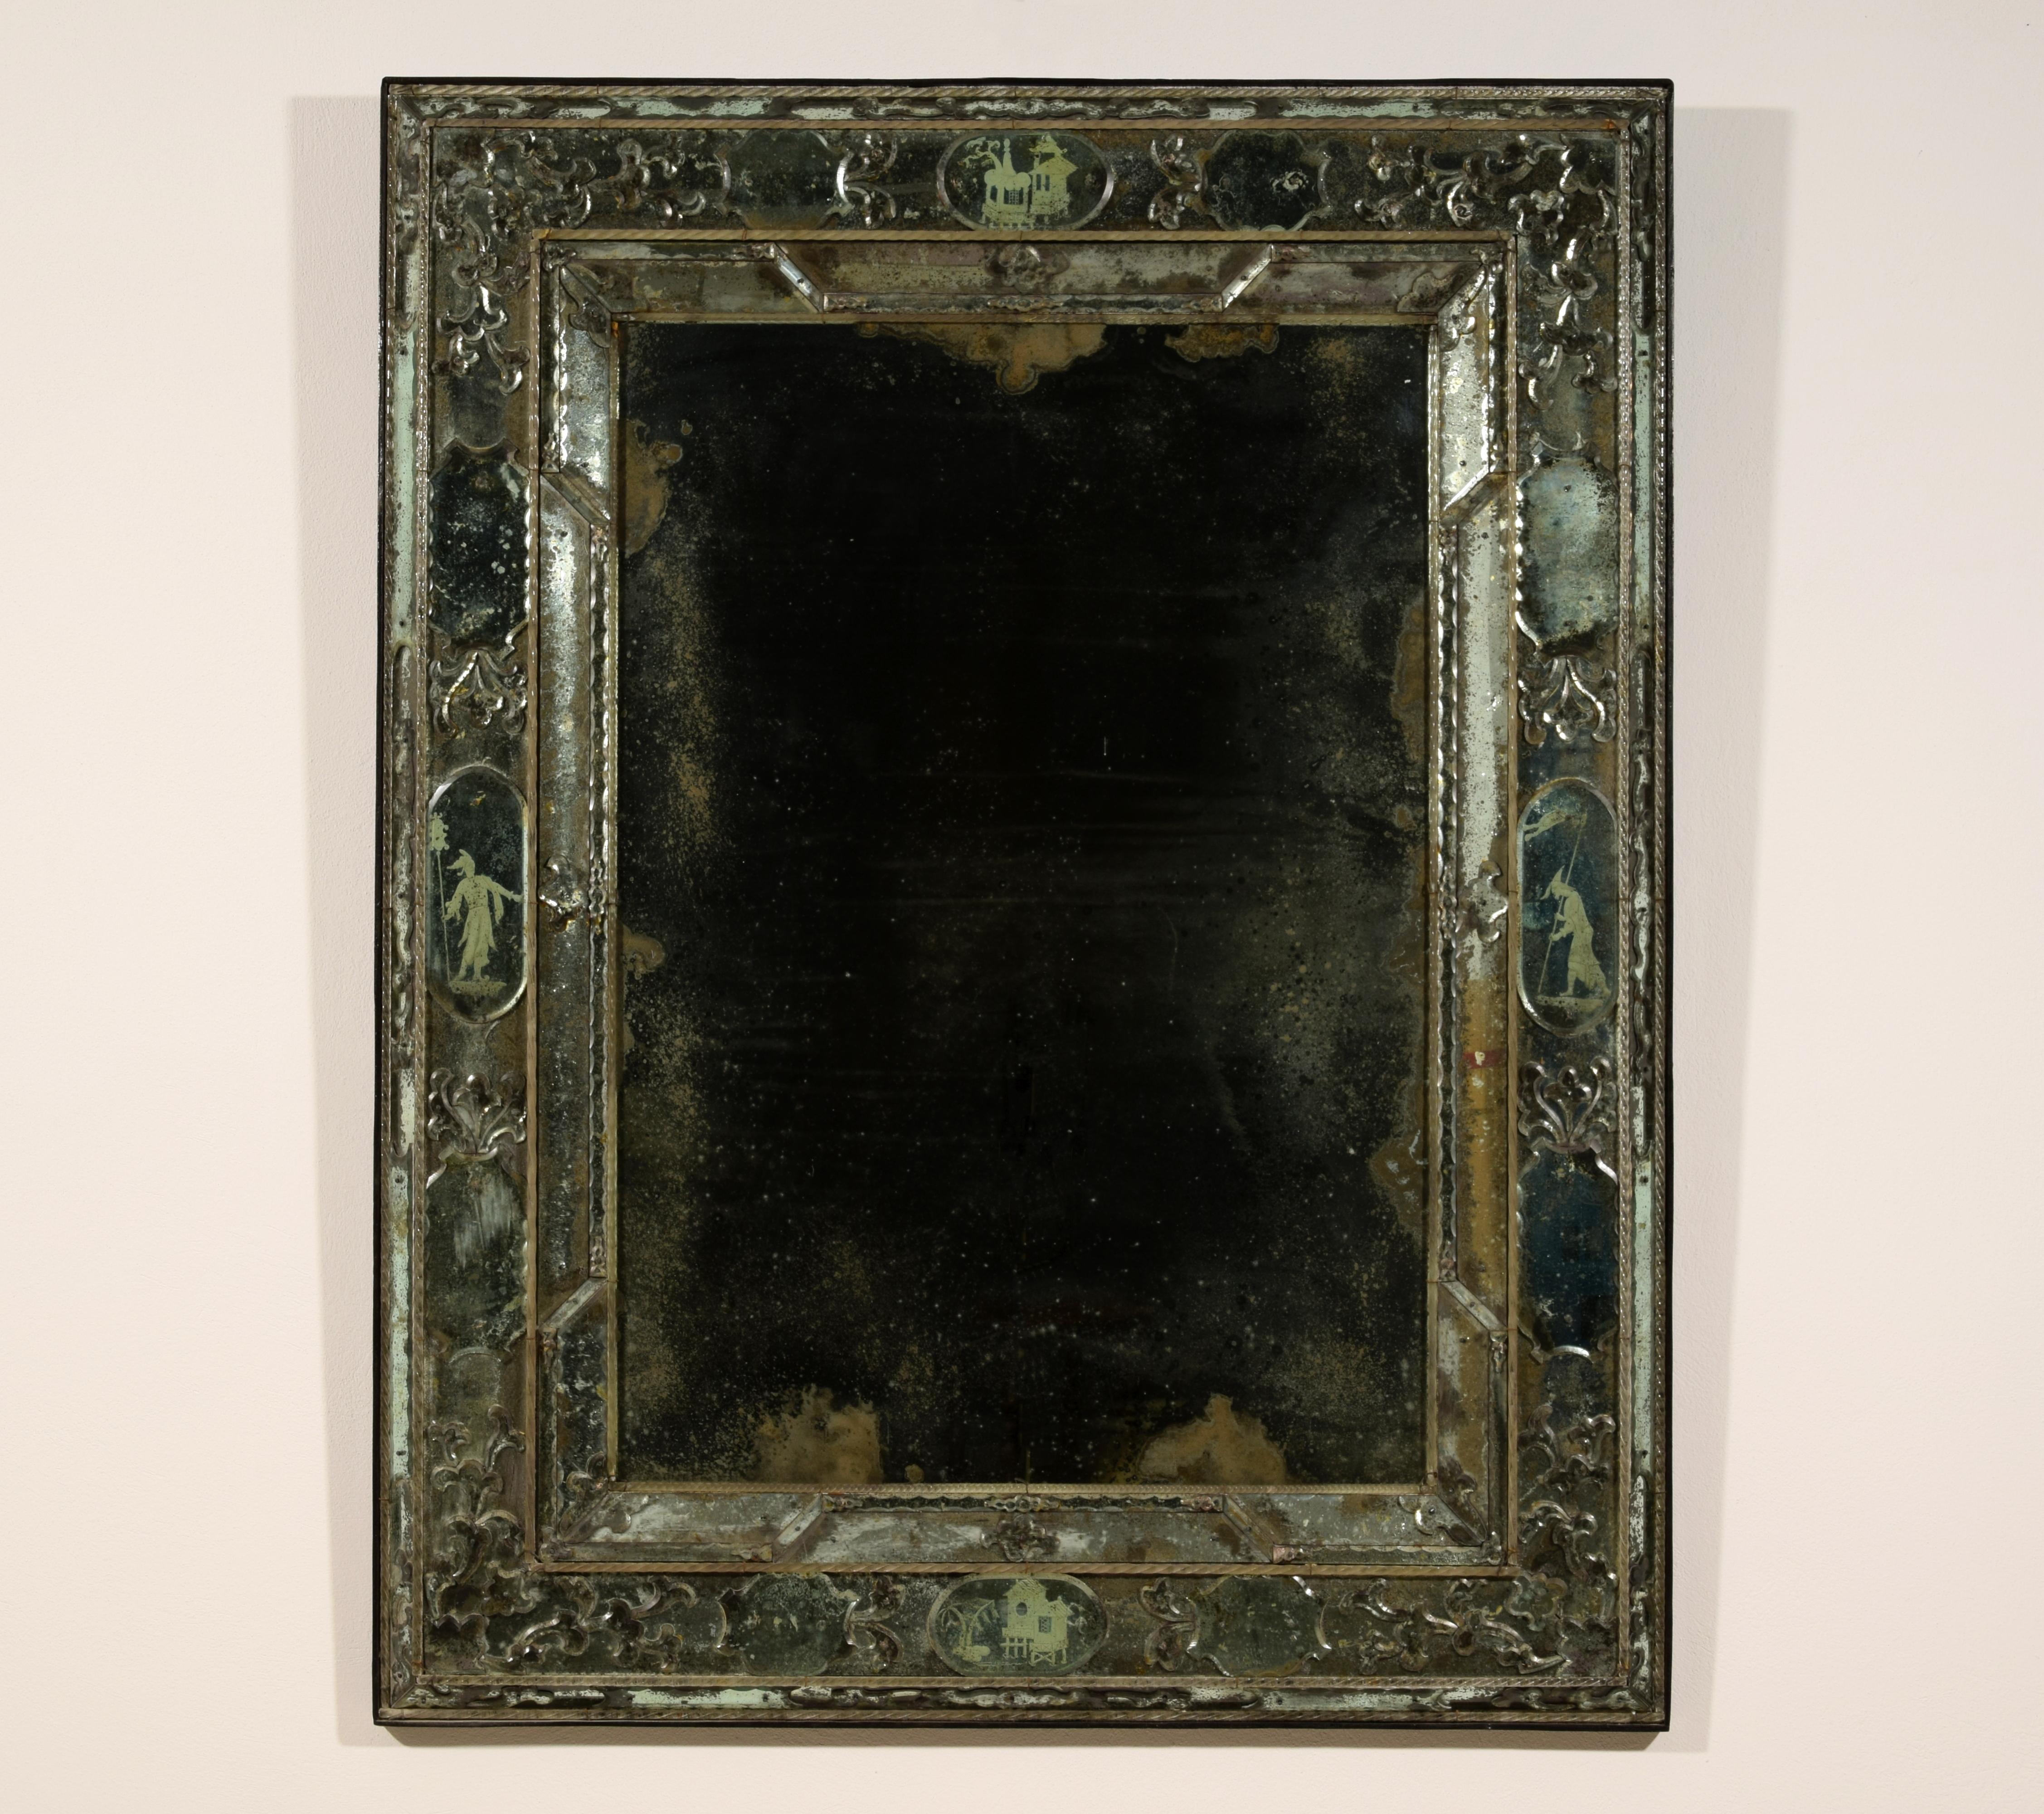 20e siècle, Miroir vénitien
Ce miroir raffiné a été fabriqué à Murano, à Venise, au XXe siècle, dans le style répandu dans la cité lagunaire au début du XVIIIe siècle. Le miroir est présenté à l'intérieur de cadres complexes réalisés par